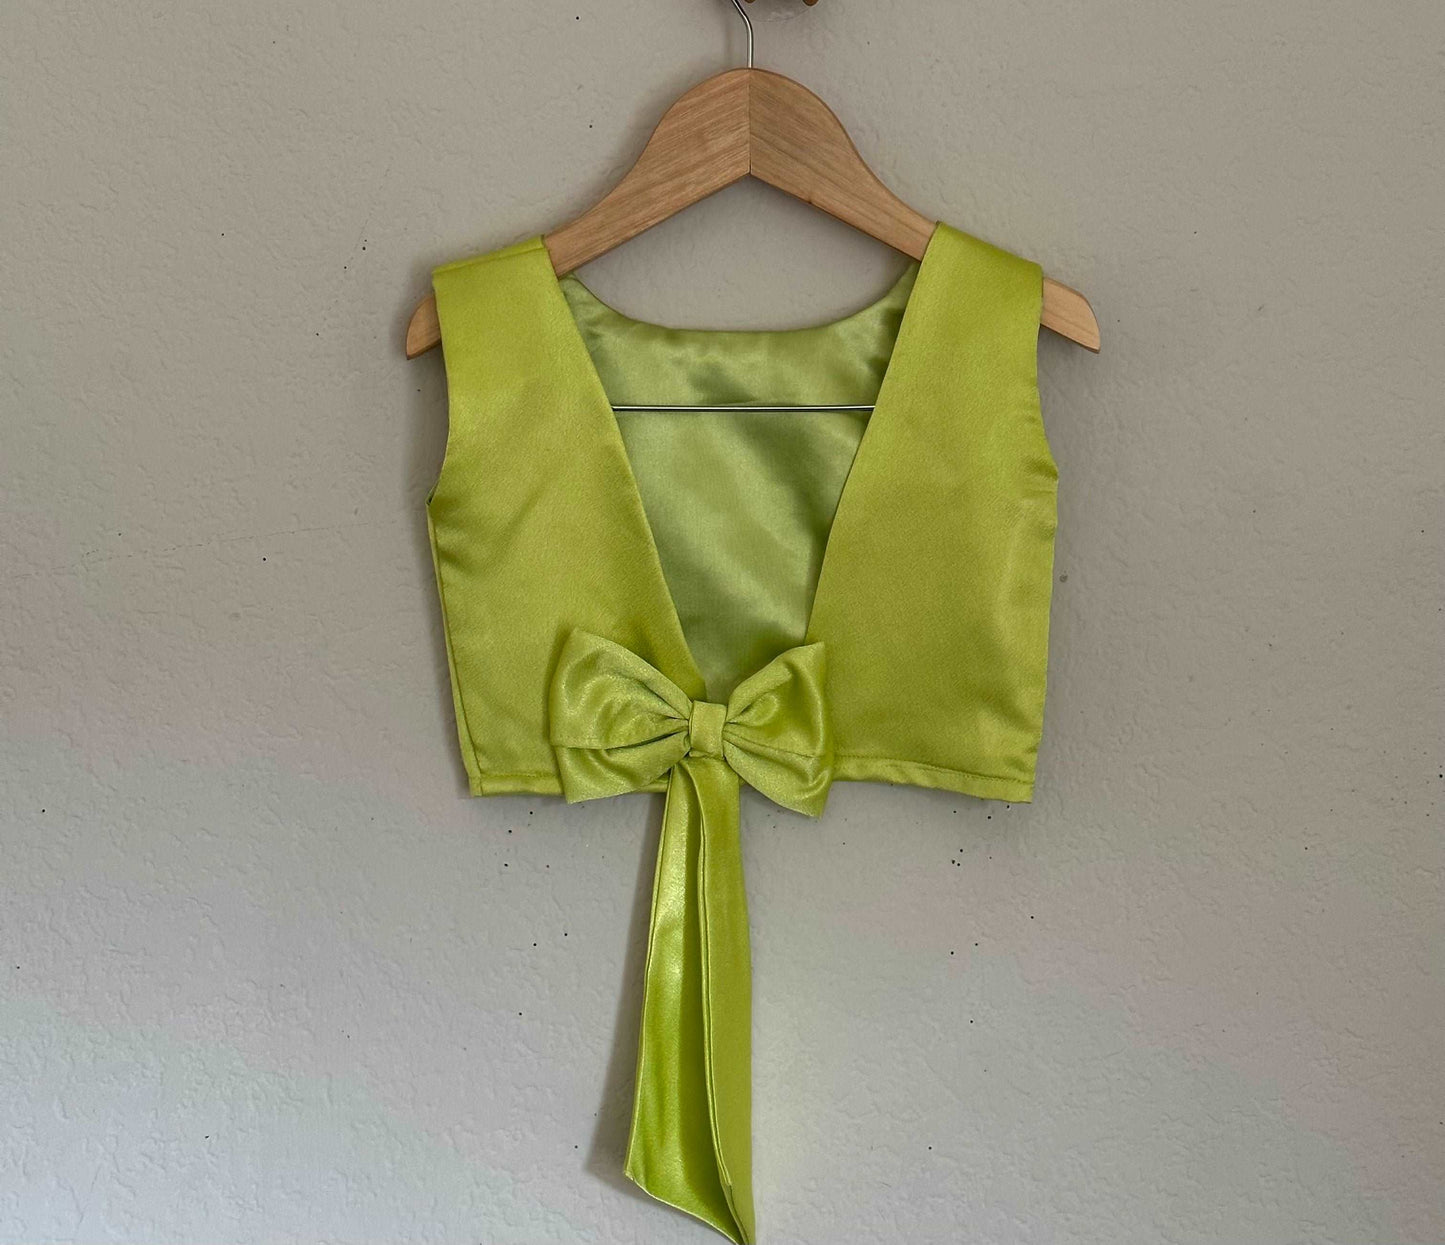 Plain Satin Sleeveless Crop Top and Printed Satin Skirt | 4-5 Yrs - Kalas Couture